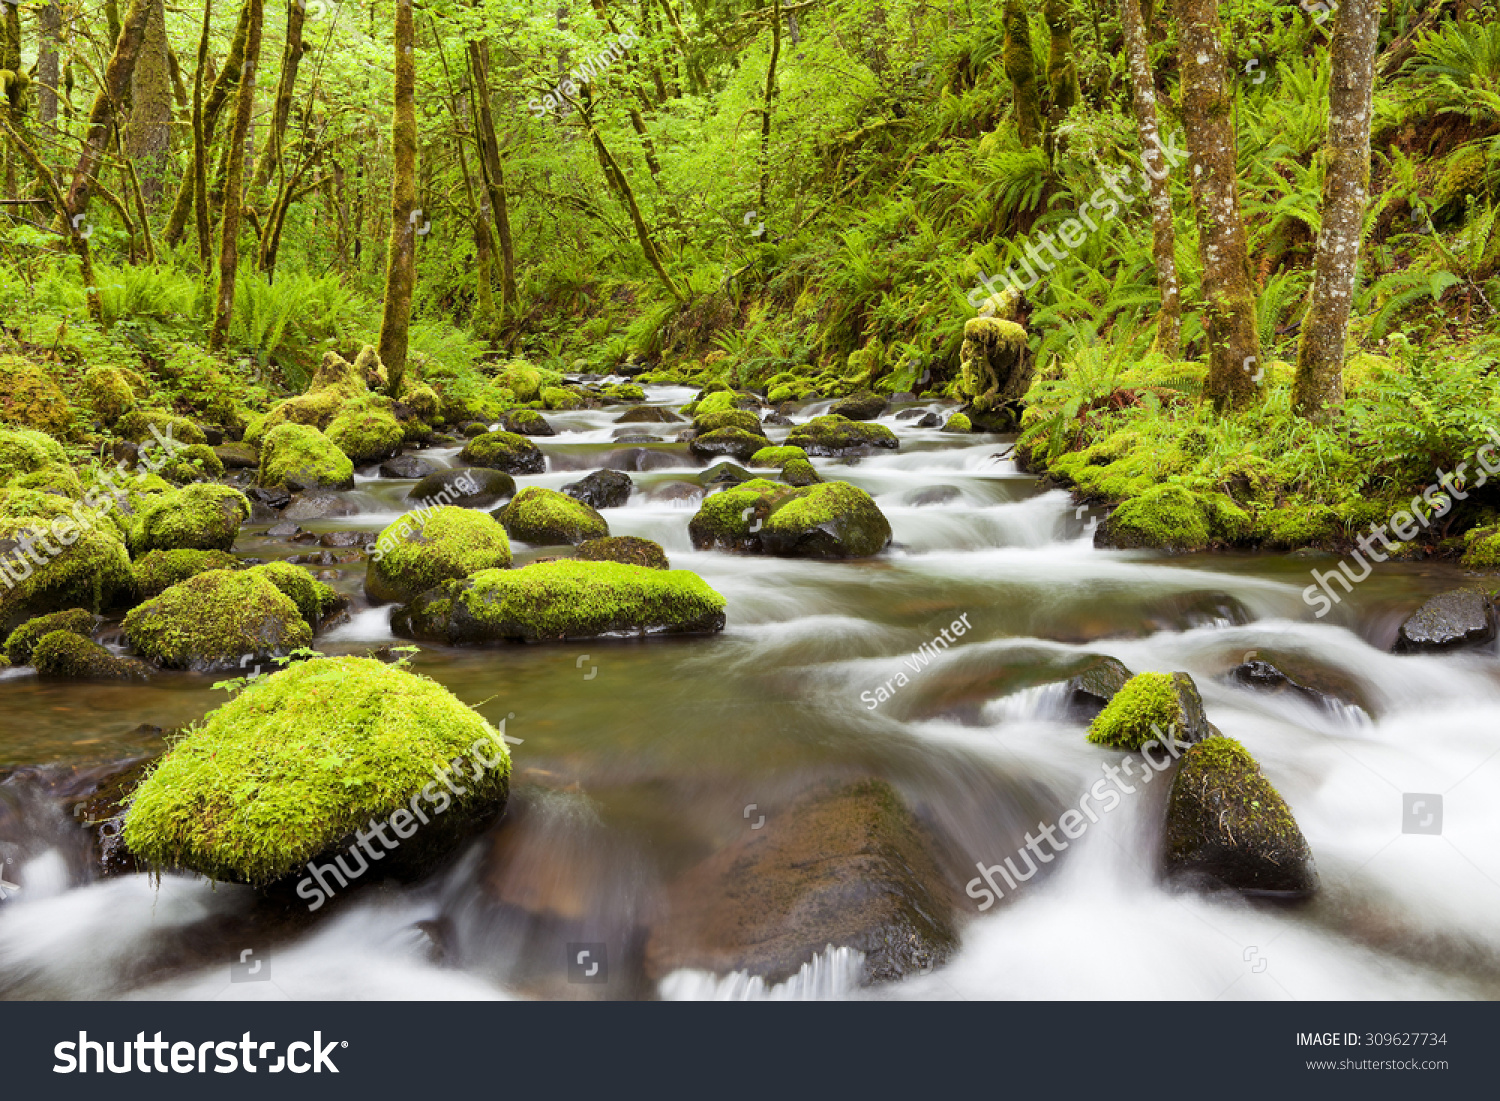 Gorton Creek through lush rainforest in the Columbia River Gorge, Oregon, USA. #309627734